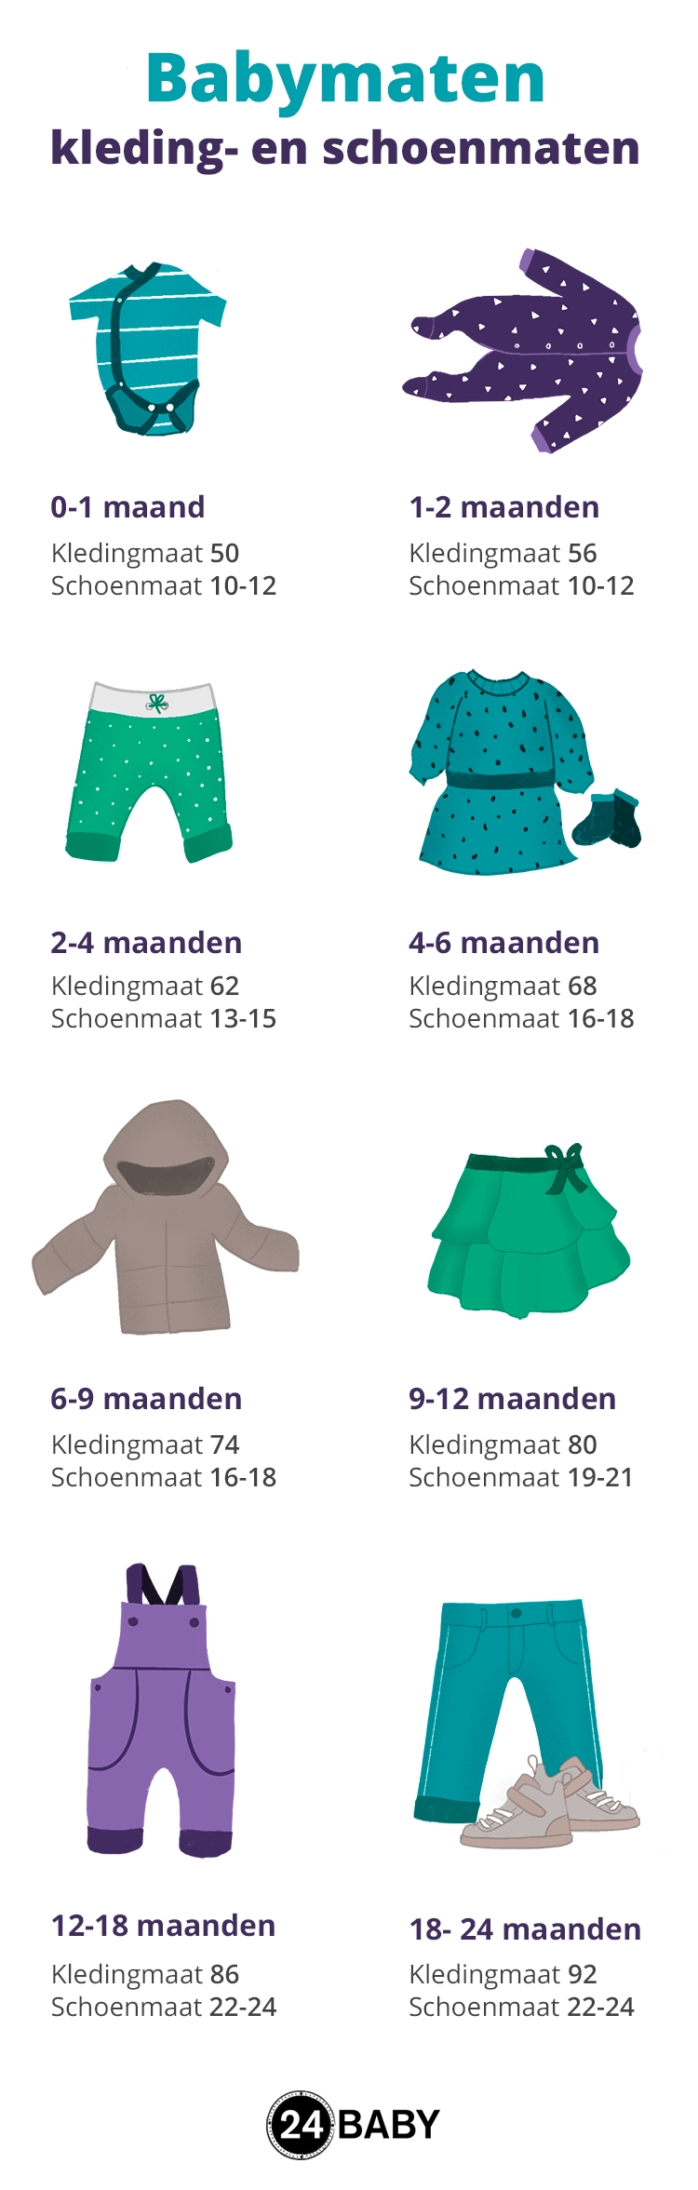 apotheker Schoolonderwijs Voldoen Babymaten – van kledingmaat tot schoenmaat – 24Baby.nl